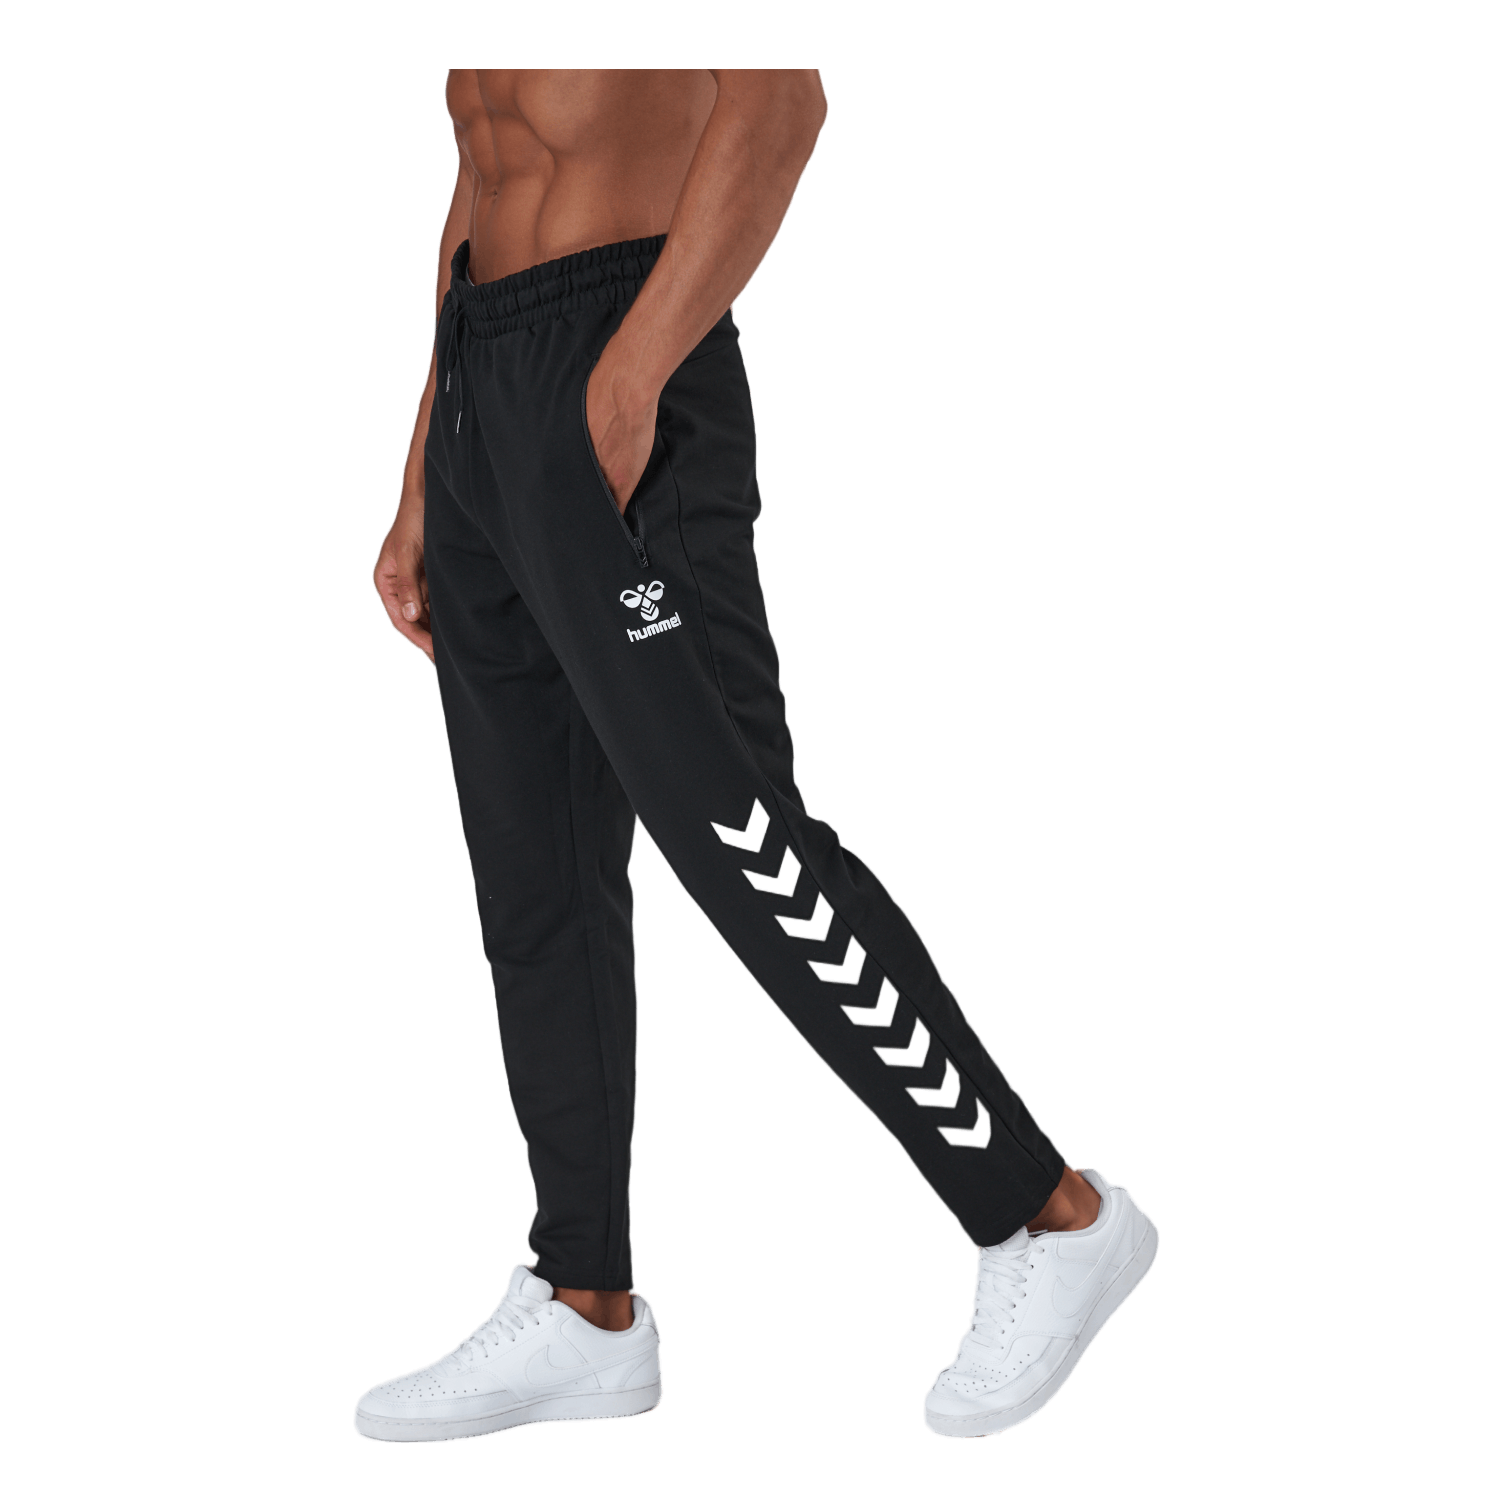 Buy Black Track Pants for Men by Hummel Online | Ajio.com